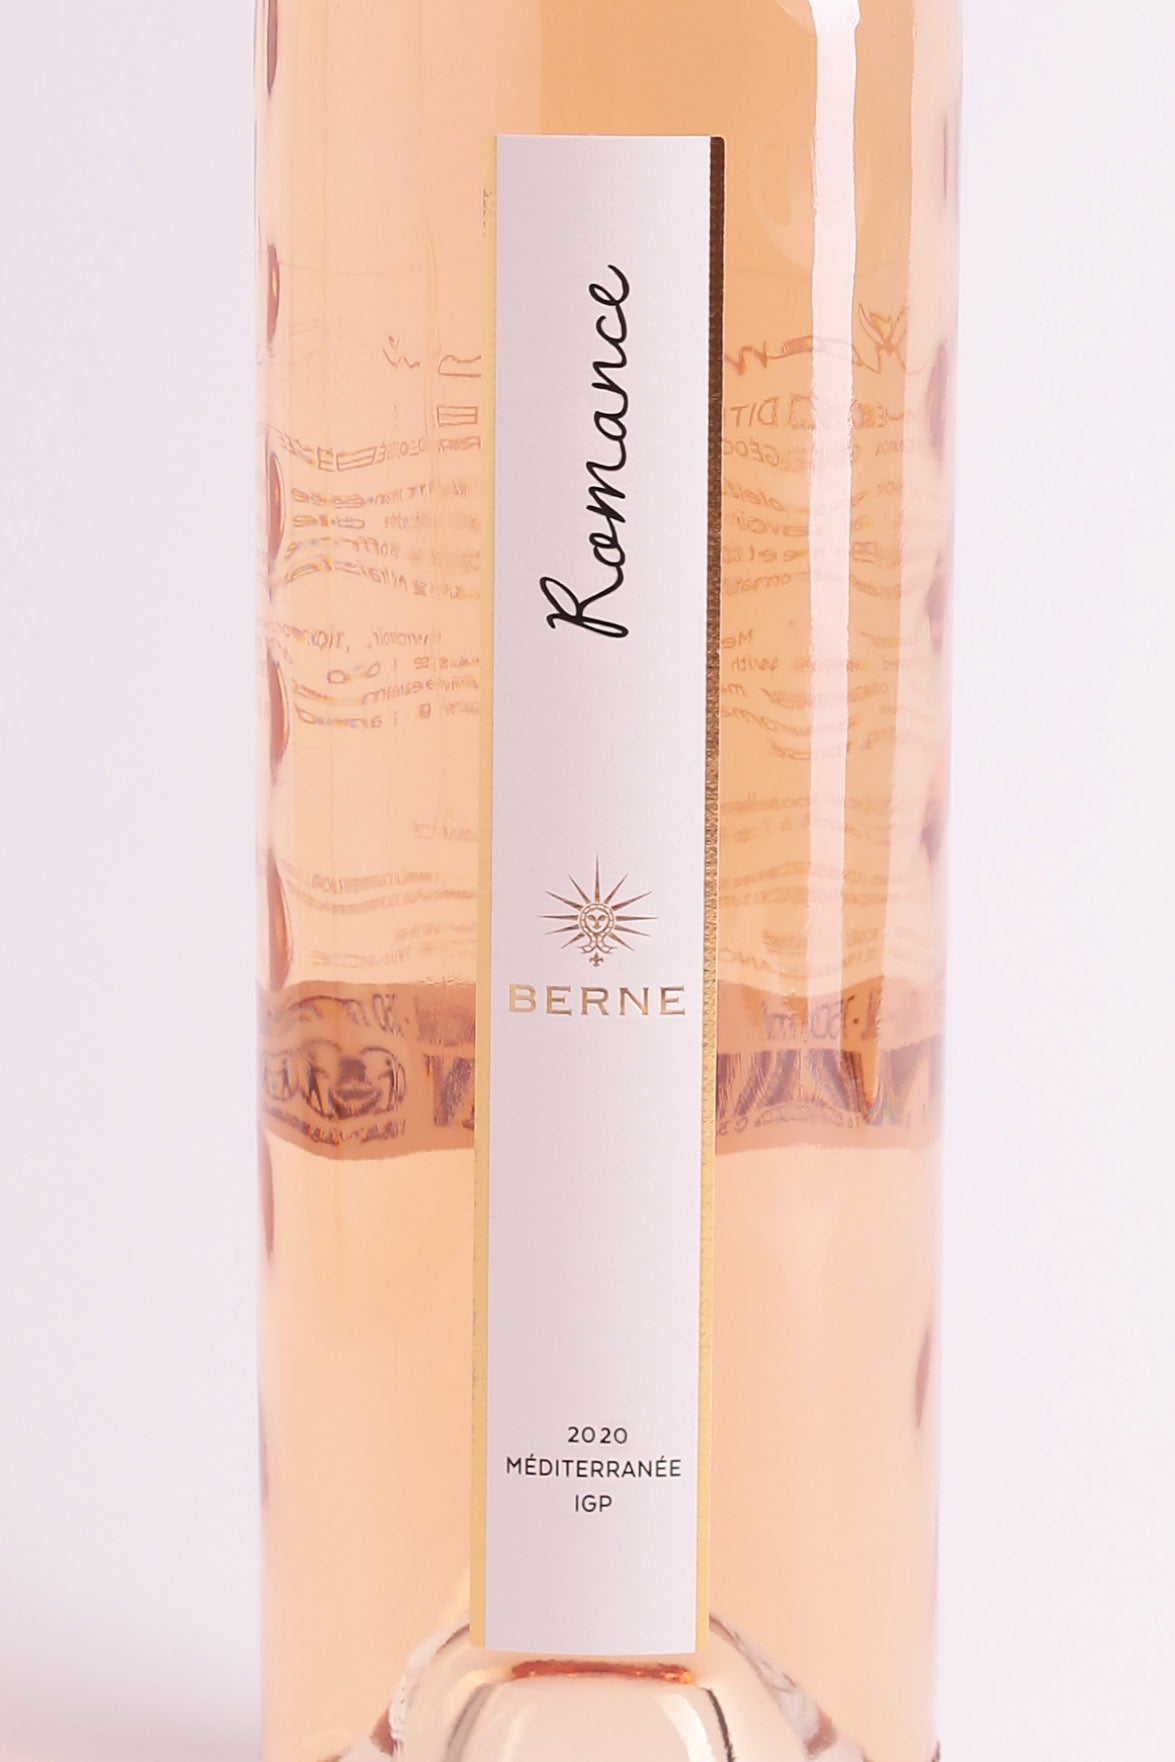 Berne Romance rosé 2020, IGP Méditerranée (0,75l) KN22042178